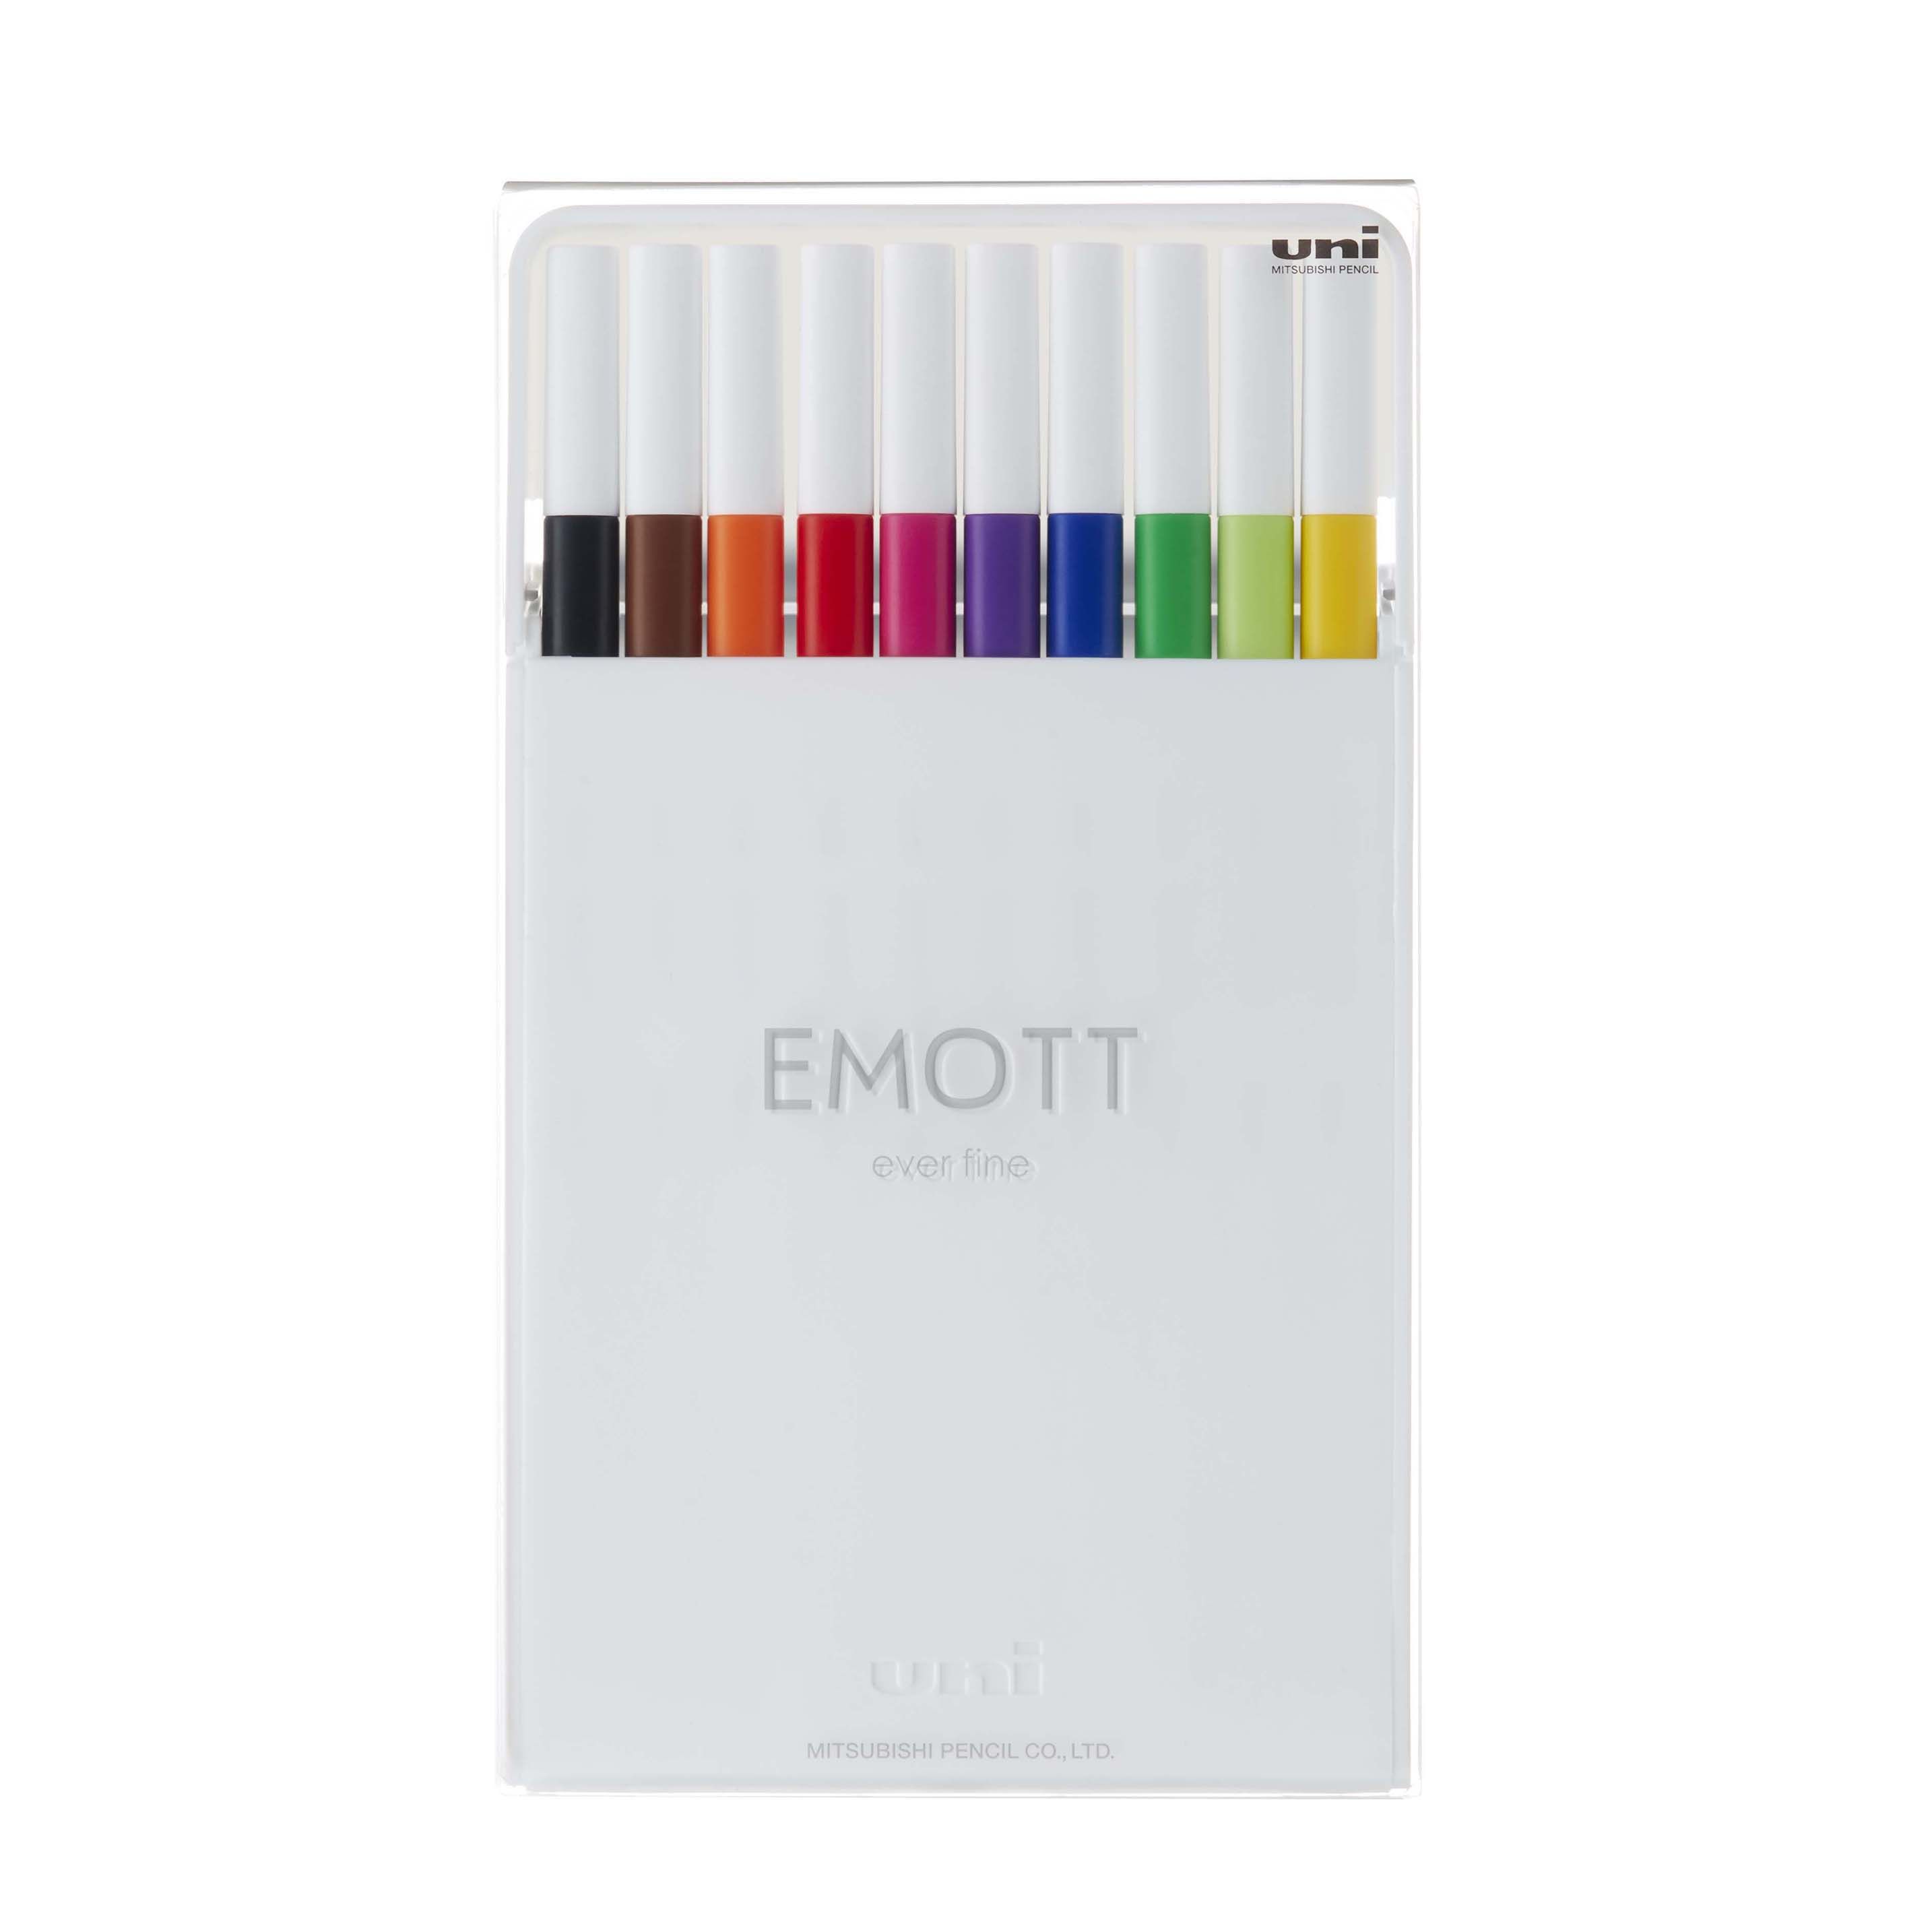 EMOTT Fineliner Pen Set #1, 10-Color | Walmart (US)